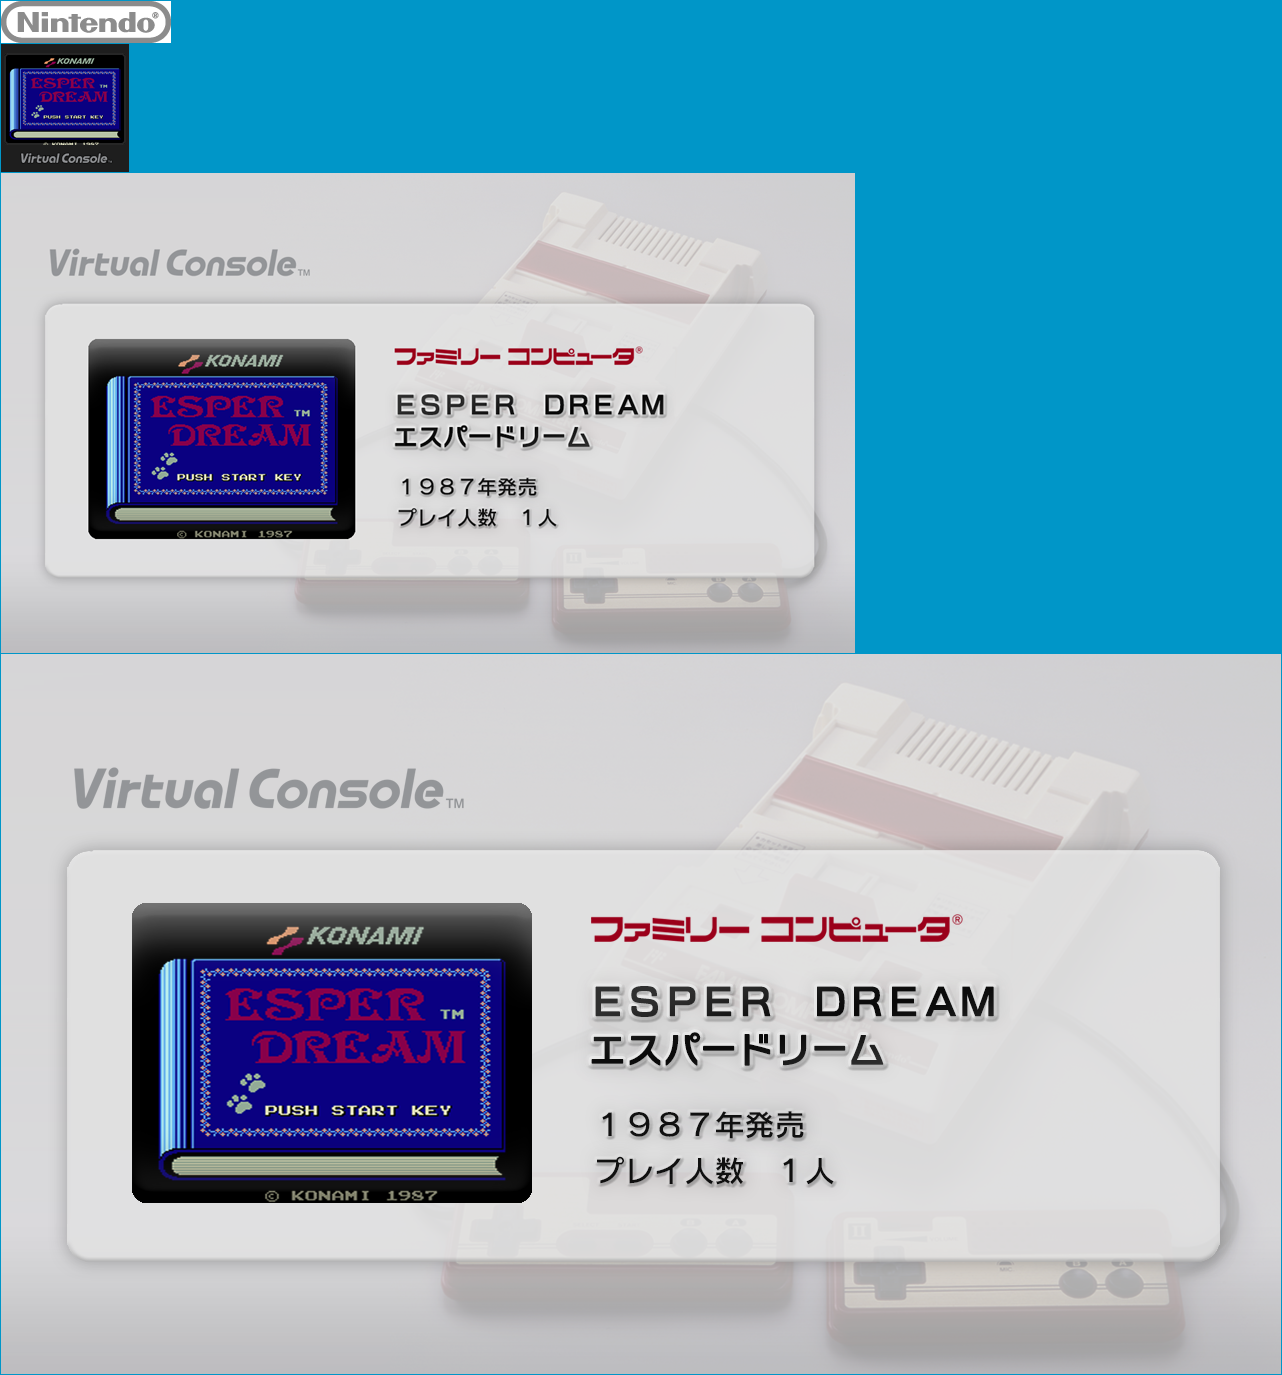 Virtual Console - ESPER DREAM